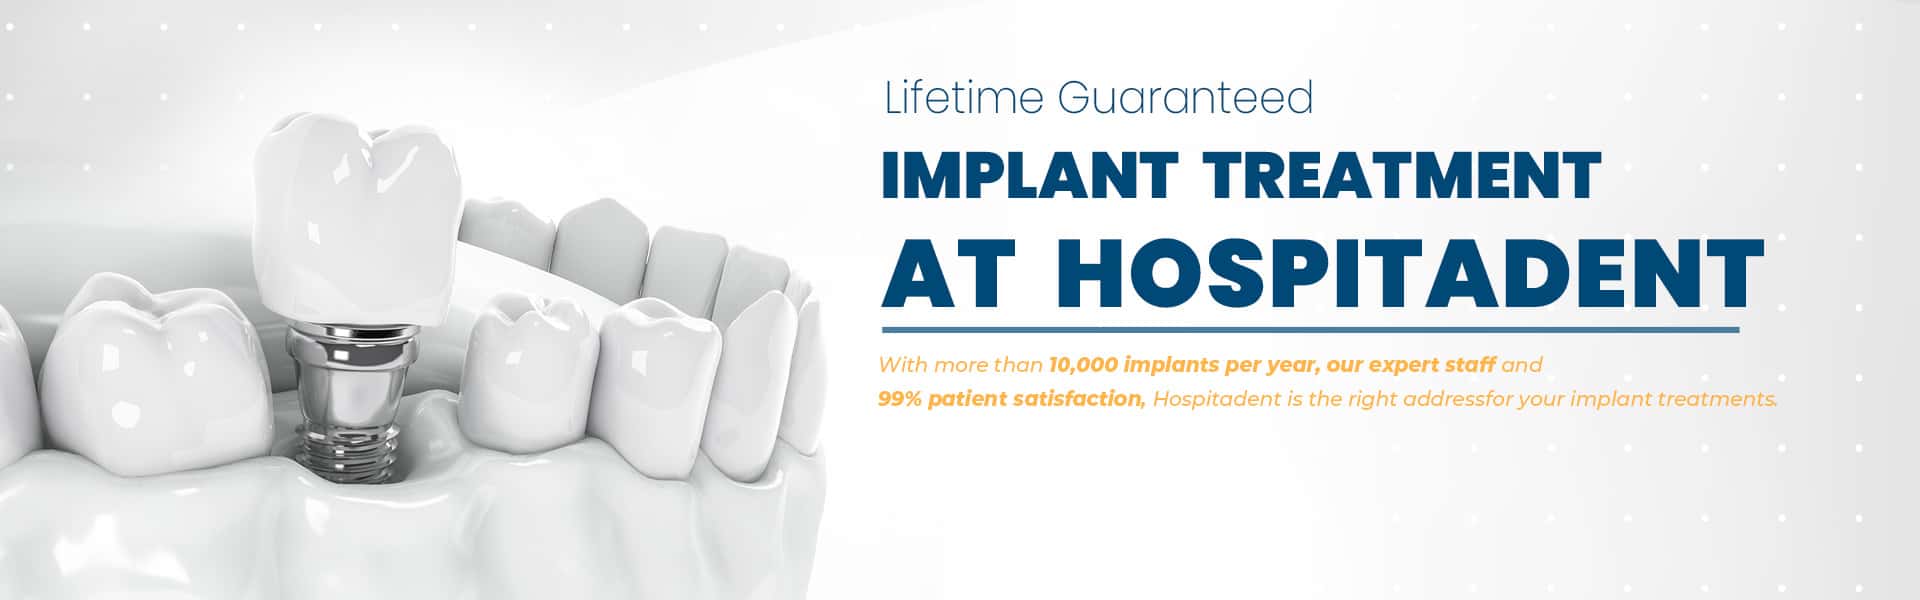 implant 1920x600 eng yeni Hospitadent English